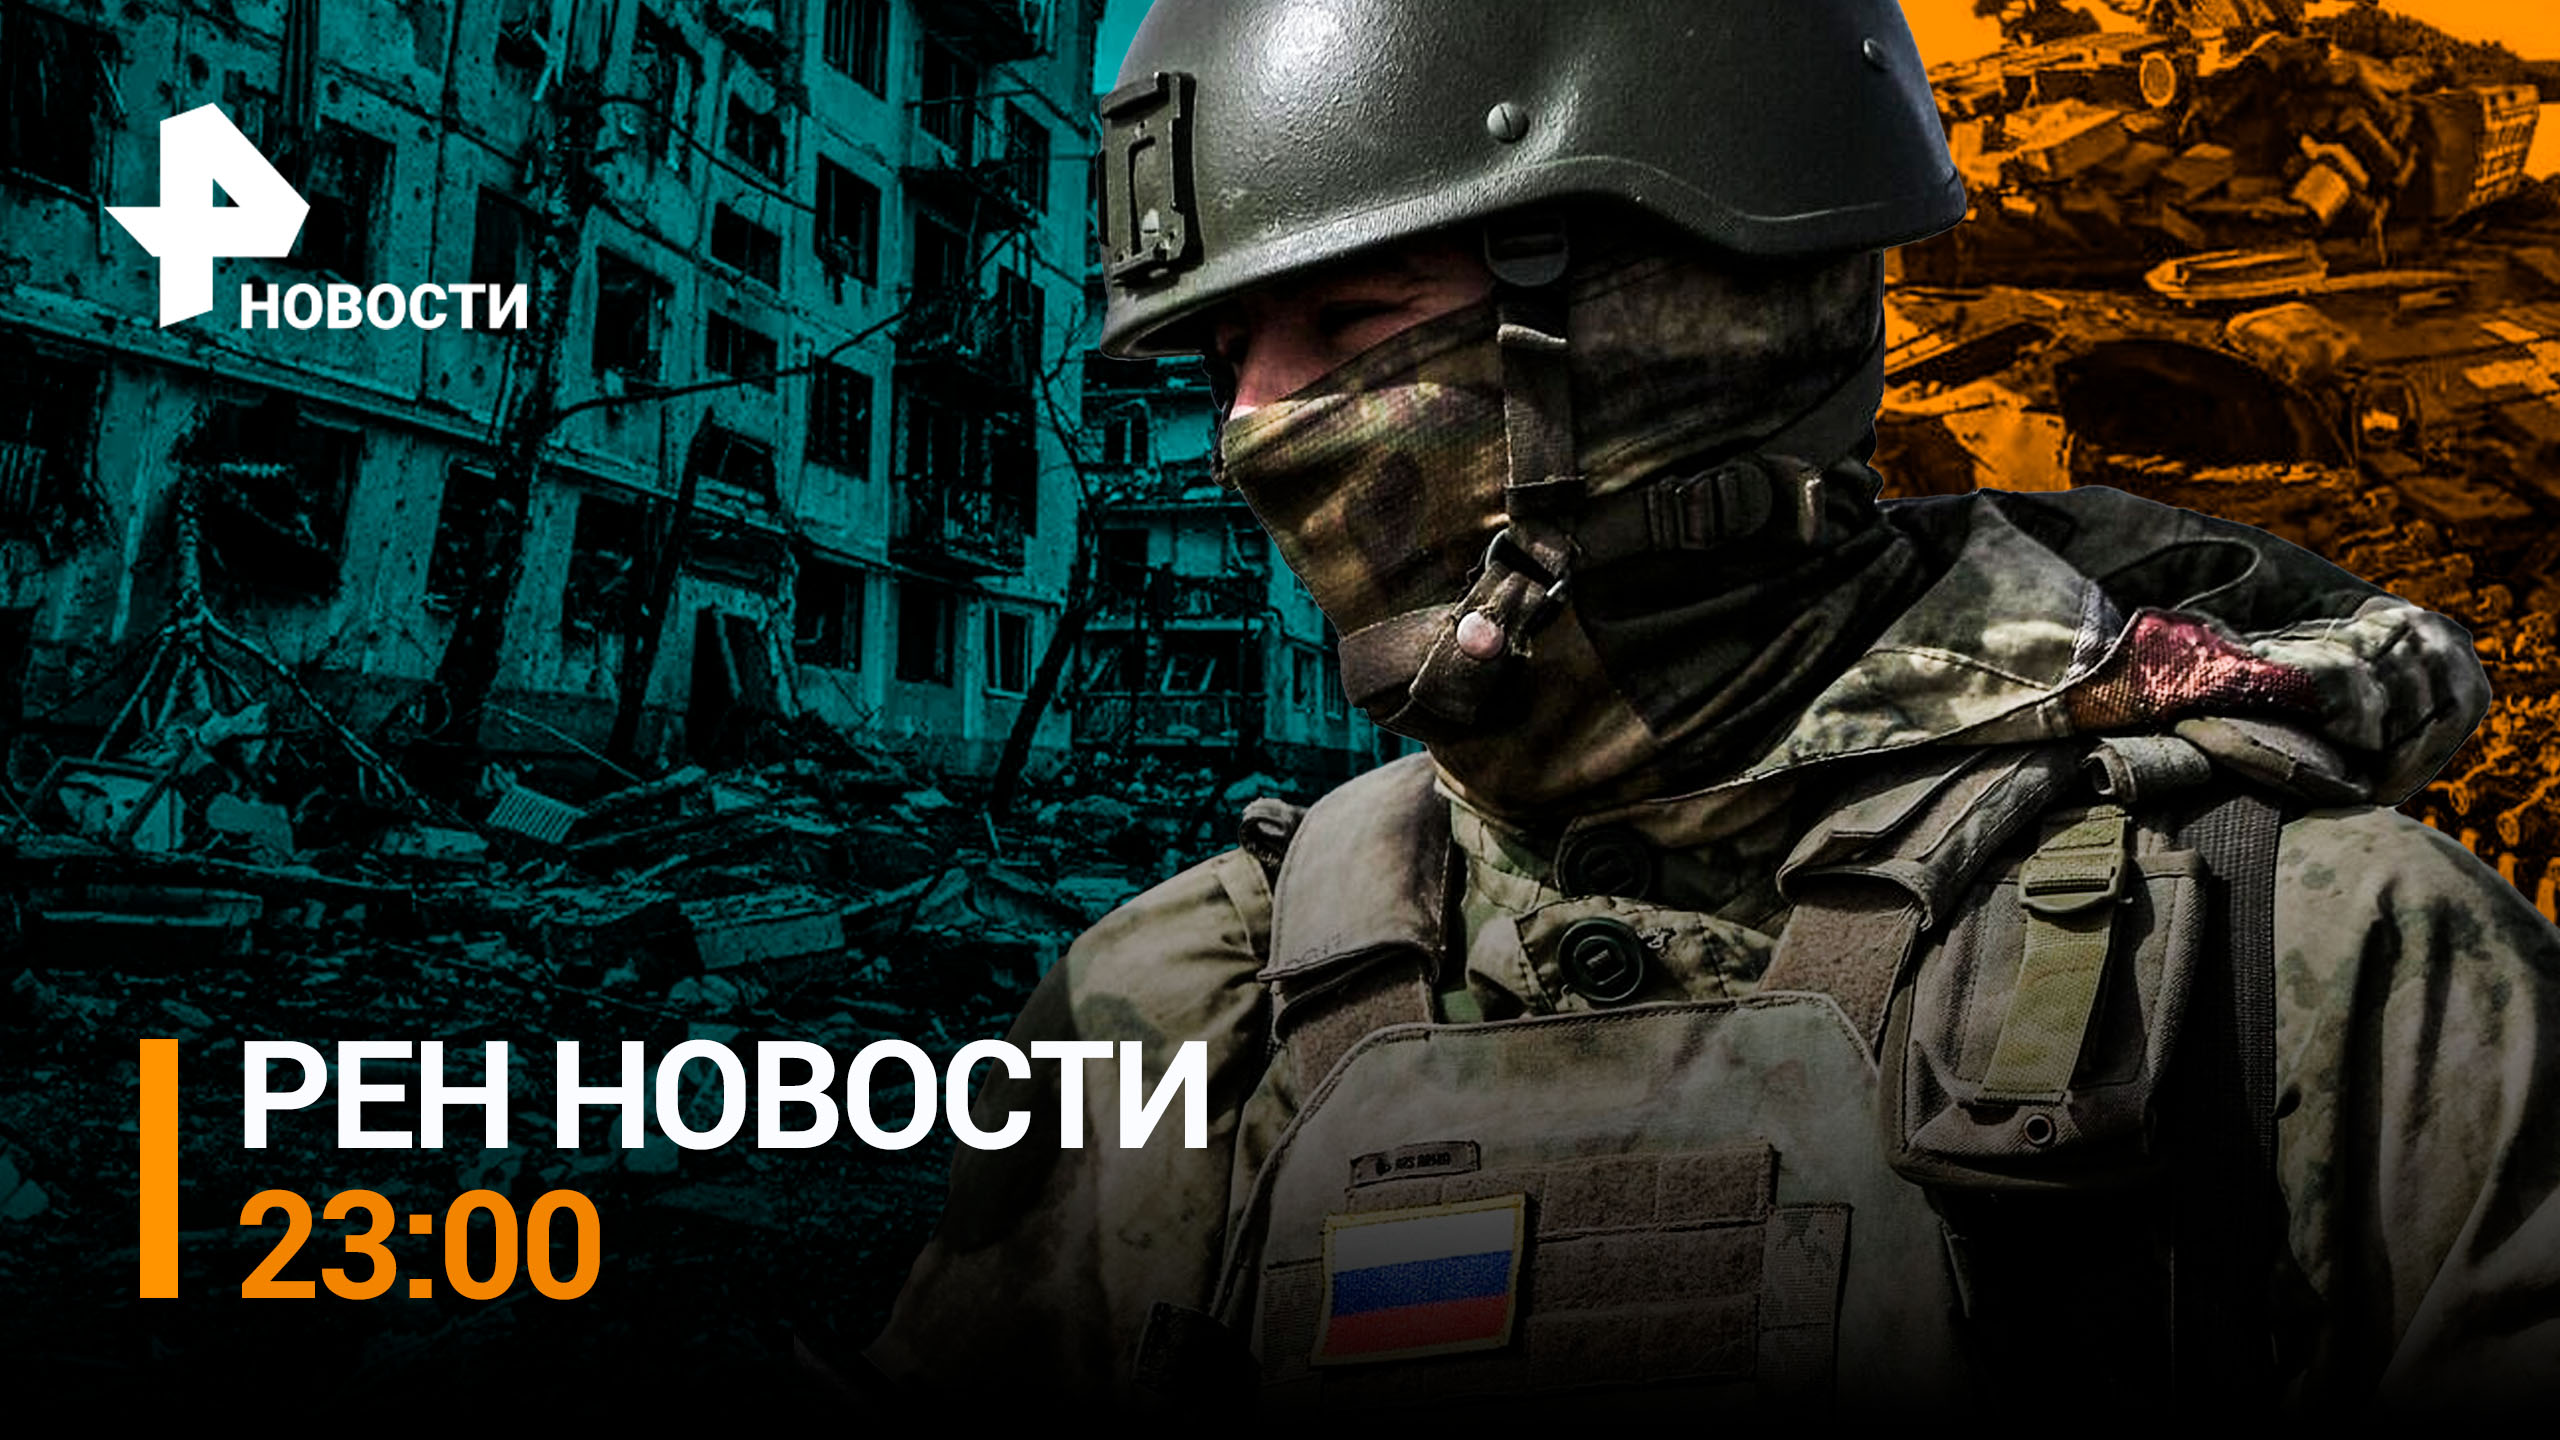 Российская армия рванула к Харьковской области из-под Сватово / РЕН НОВОСТИ 23:00 от 25.07.23